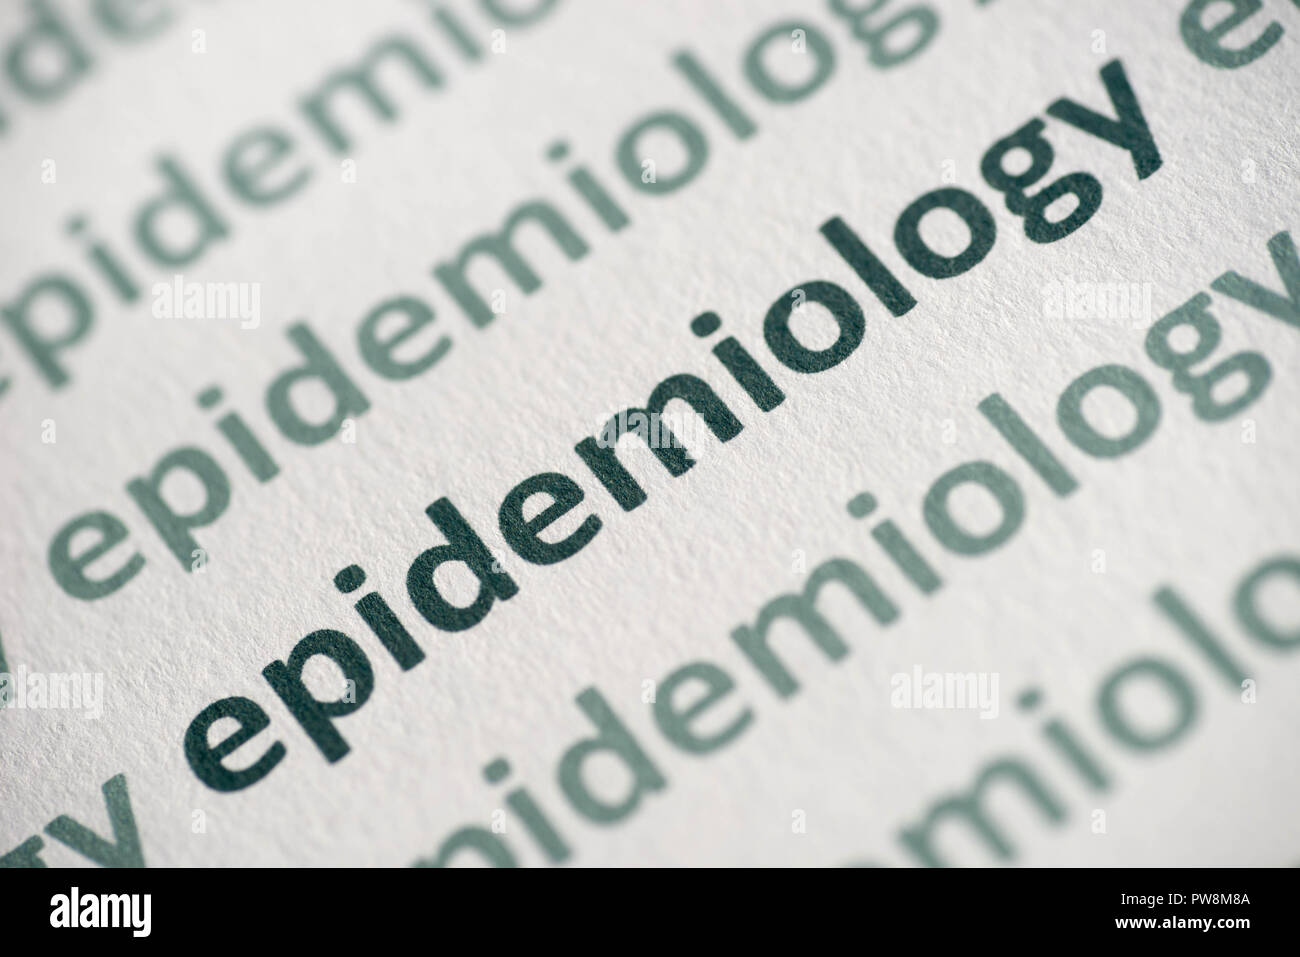 word epidemiology printed on white paper macro Stock Photo